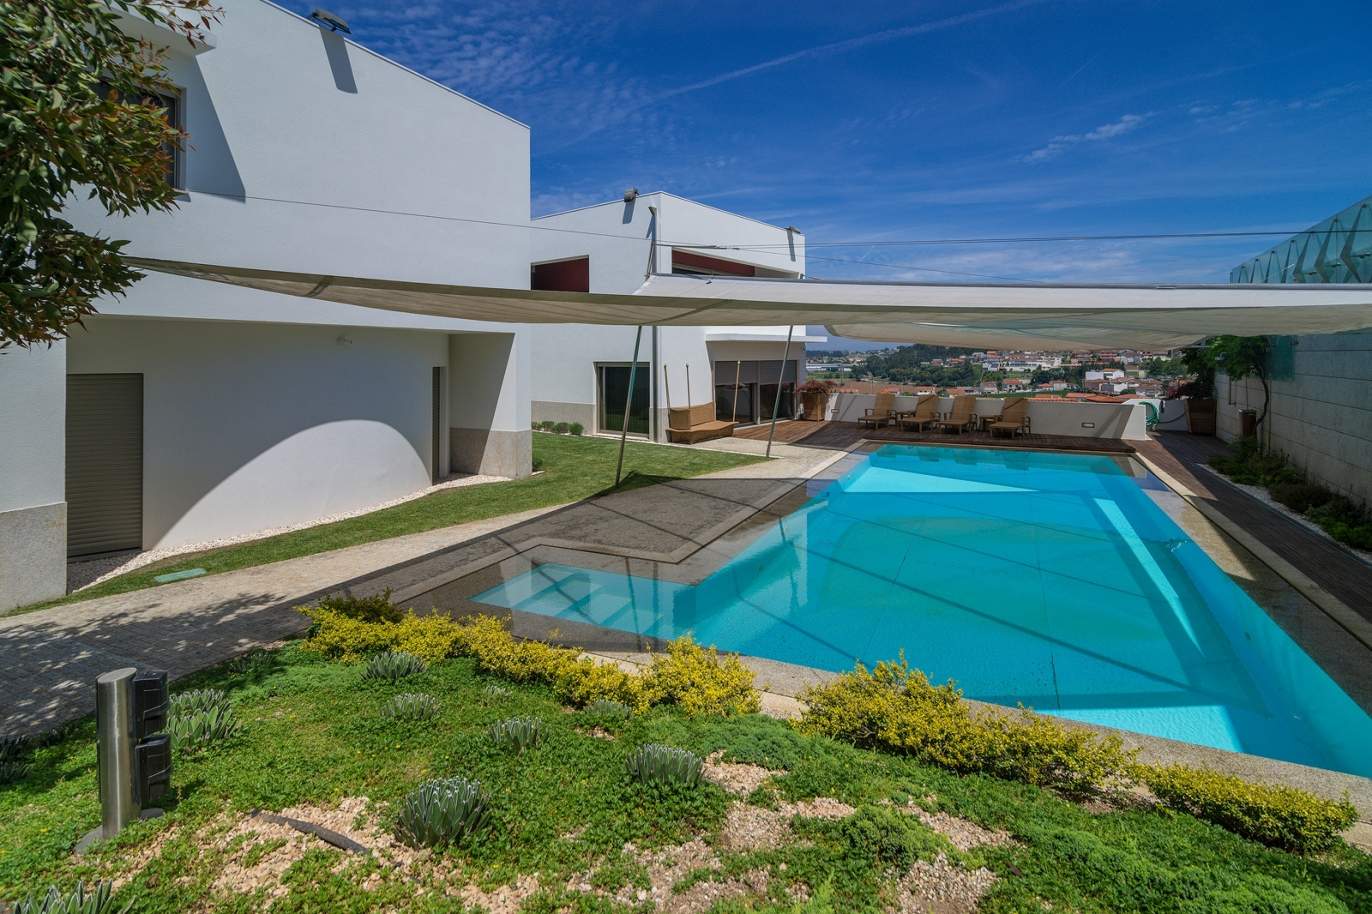 Villa de 3 habitaciones, con piscina y jardín, en venta, en Trofa, Porto, Portugal_154947